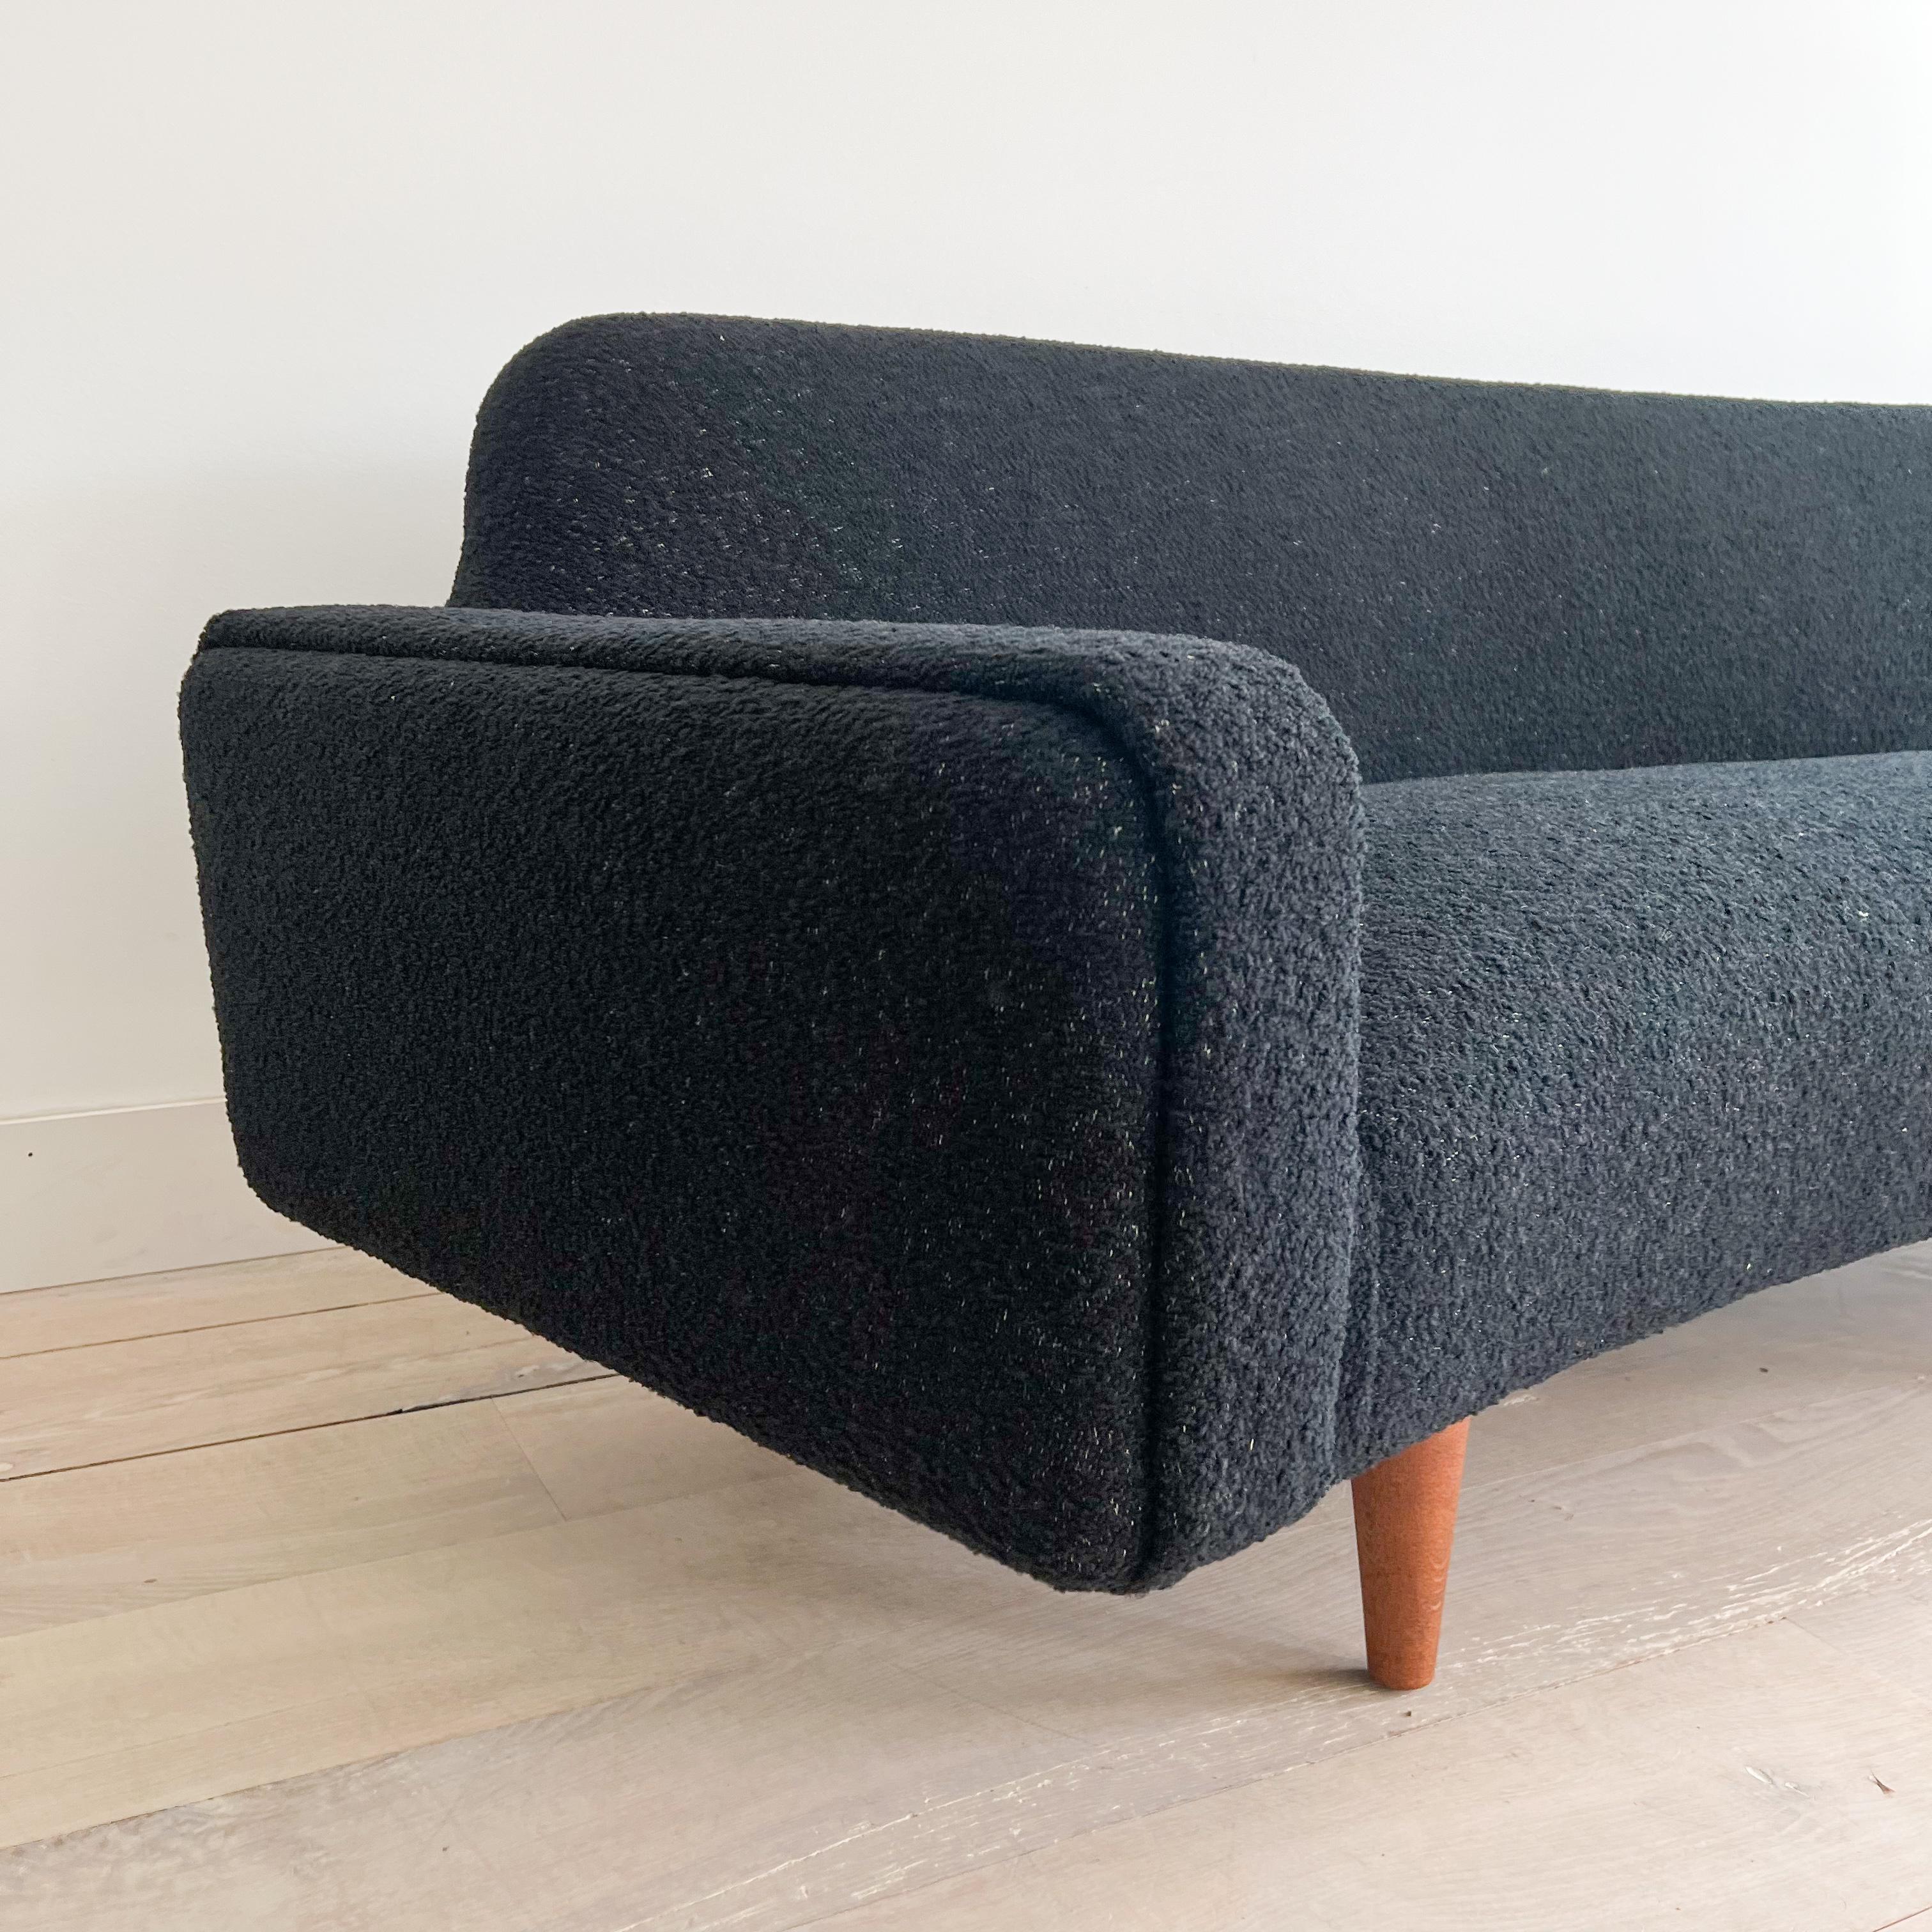 Illum Wikkelso's Rare Banana Curved Sofa - Model 450 - New Upholstery 4